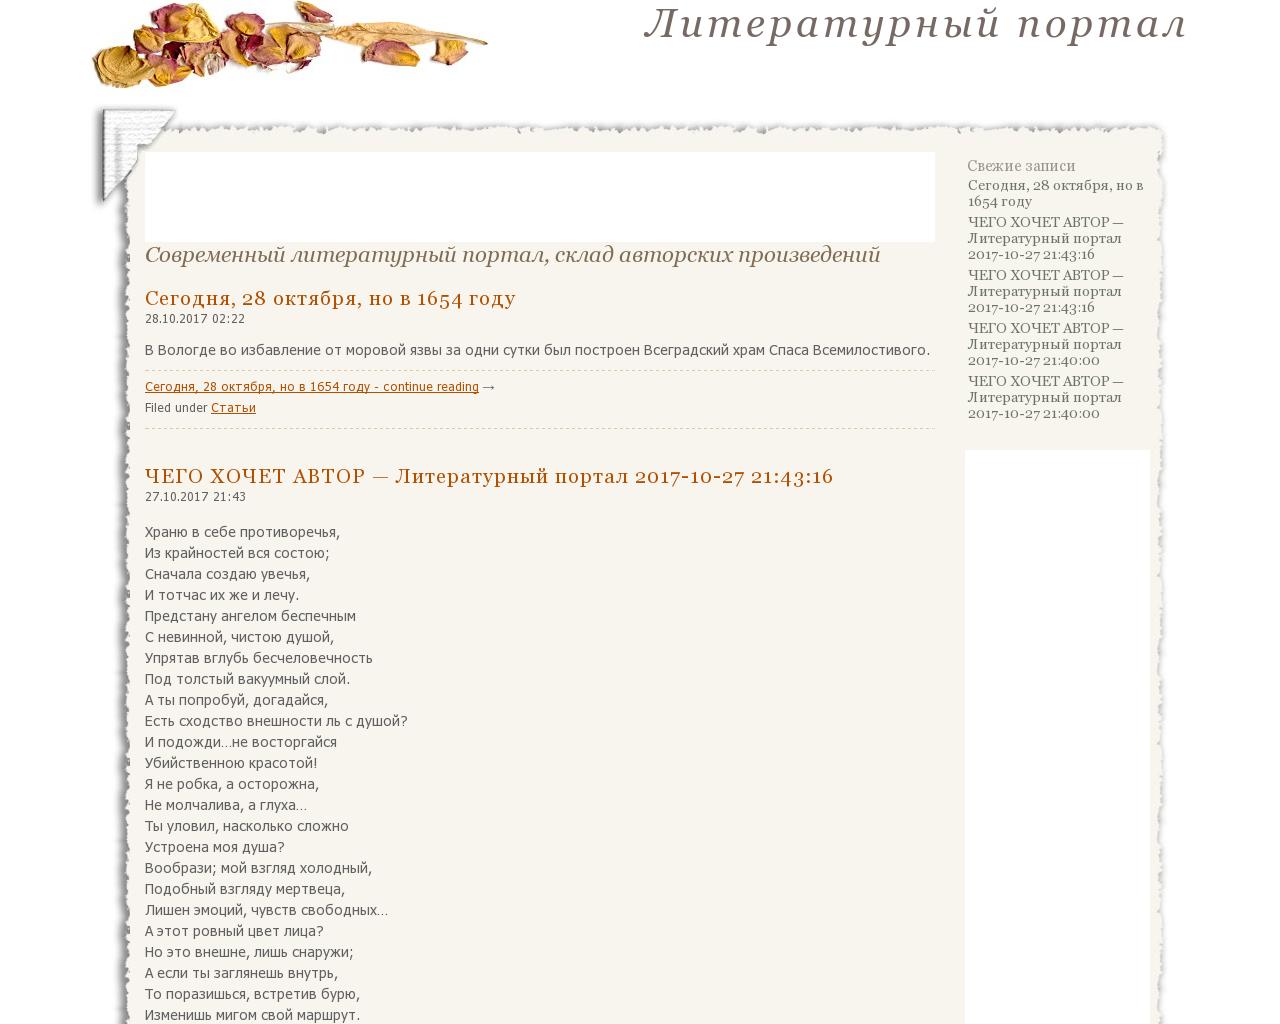 Изображение сайта poezia-bessmertna.ru в разрешении 1280x1024